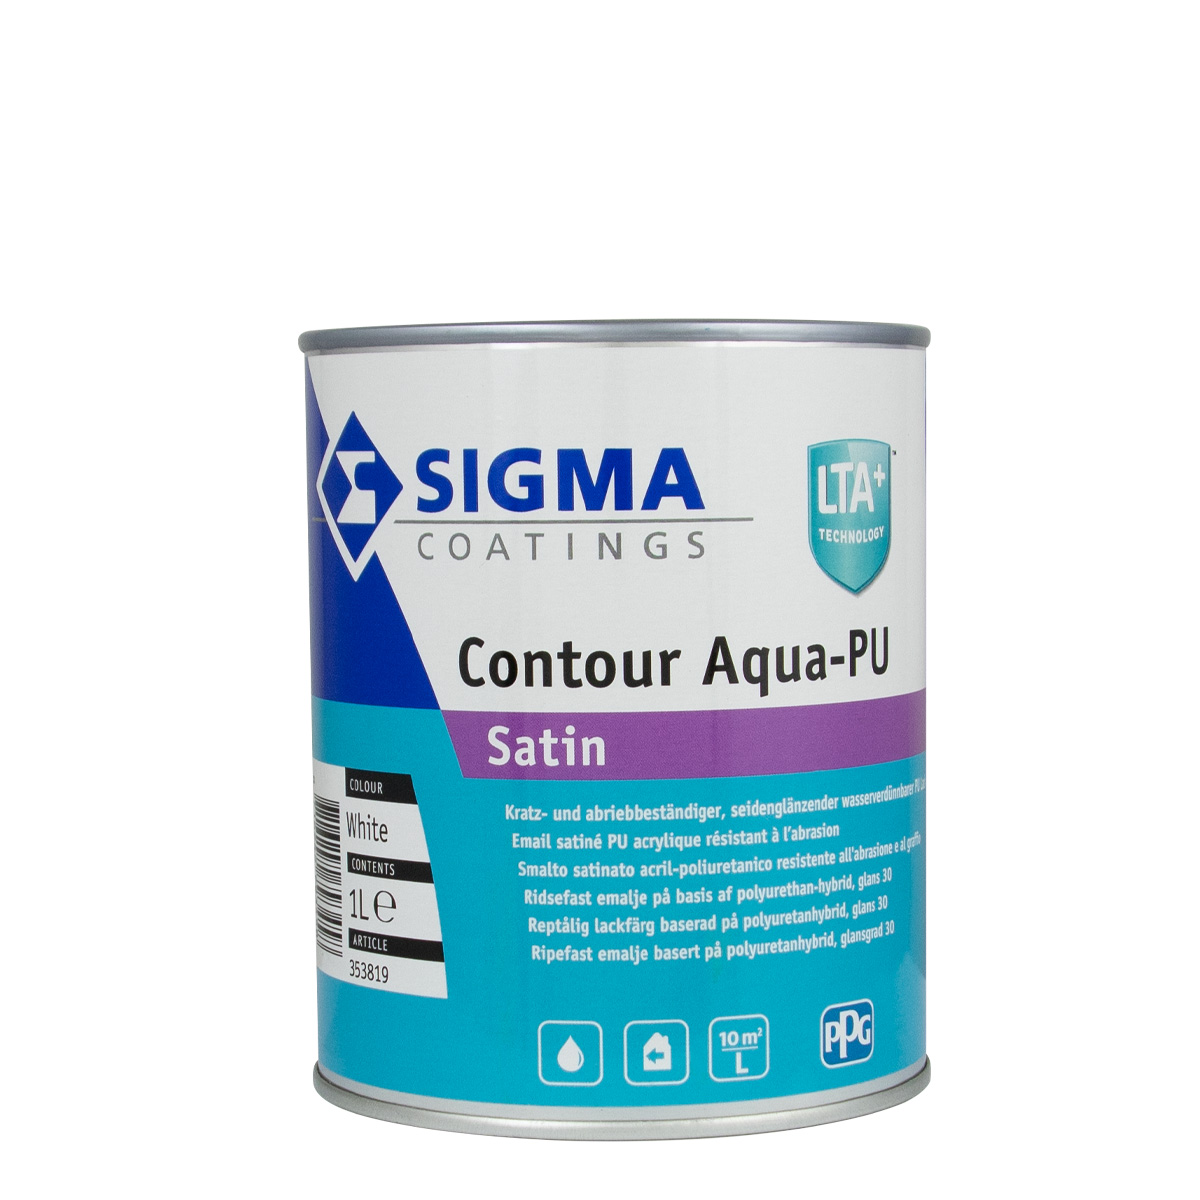 Sigma Contour Aqua-PU Satin weiss 1L, seidenglänzend